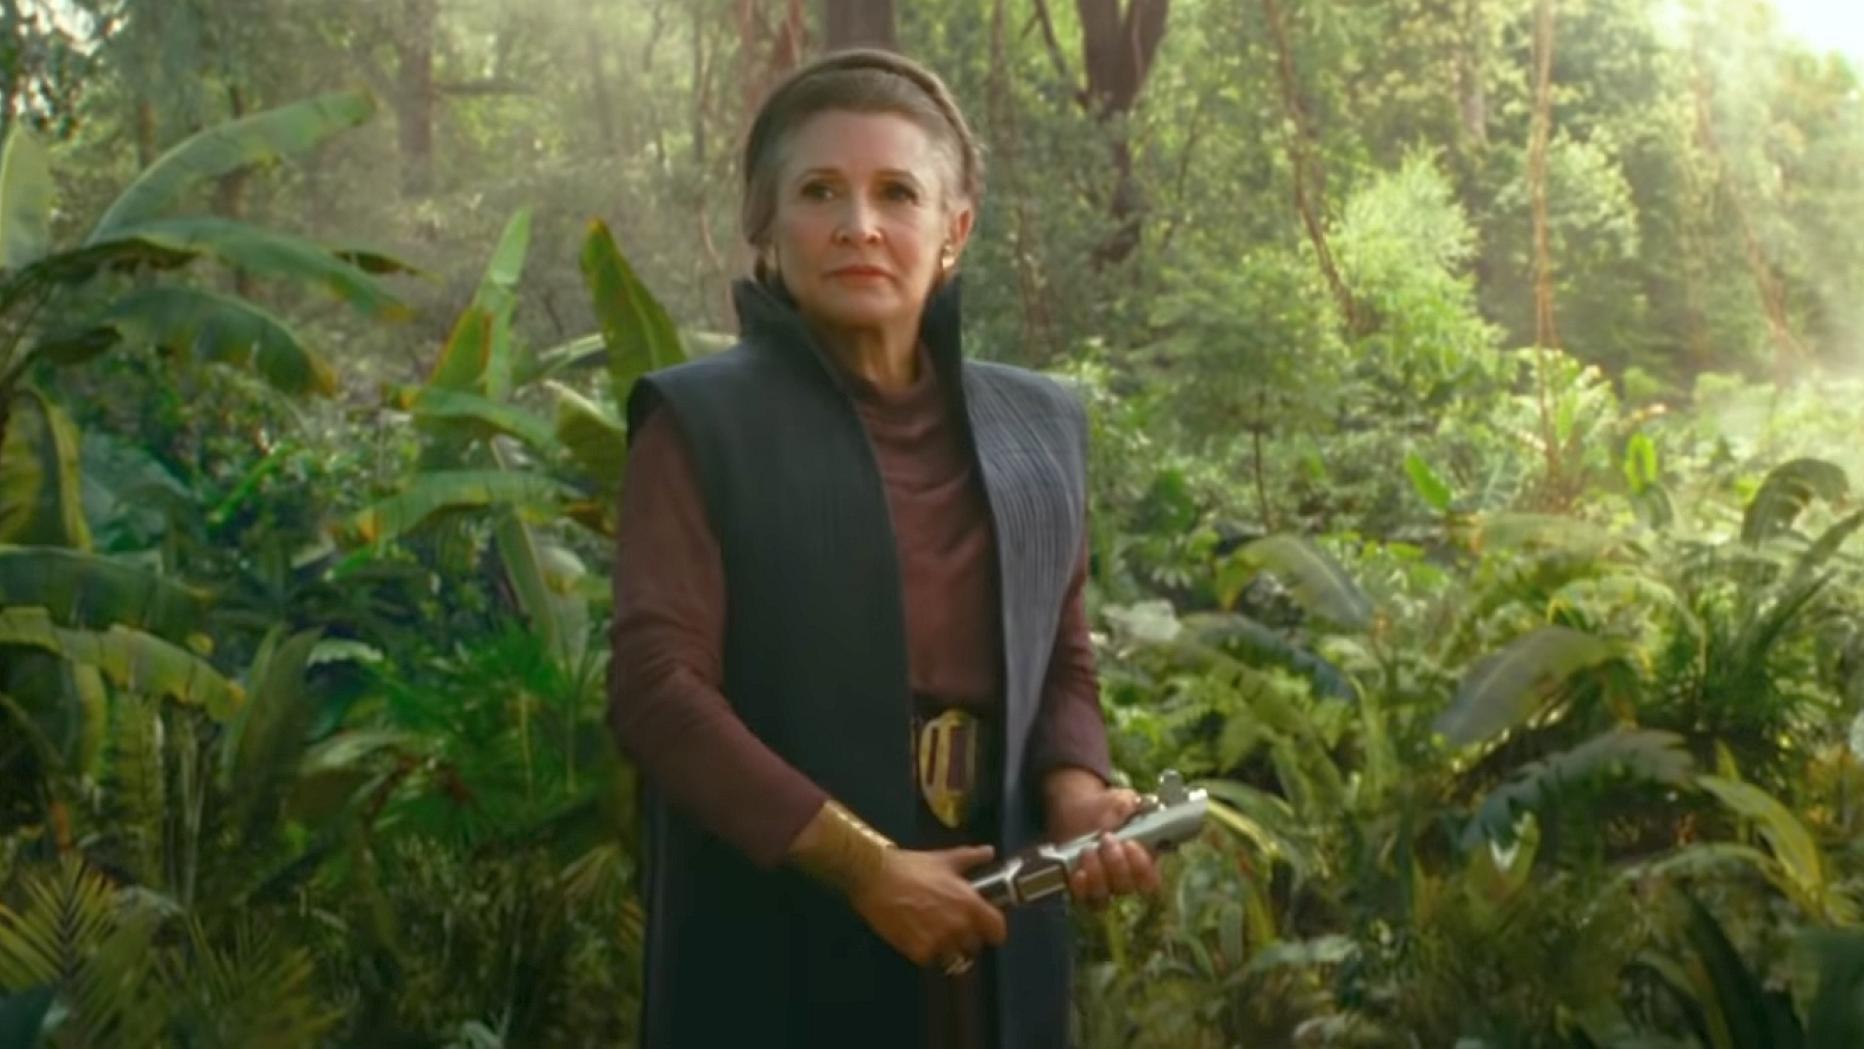 Neuer Star Wars Trailer Zeigt Prinzessin Leia Mit Lichtschwert